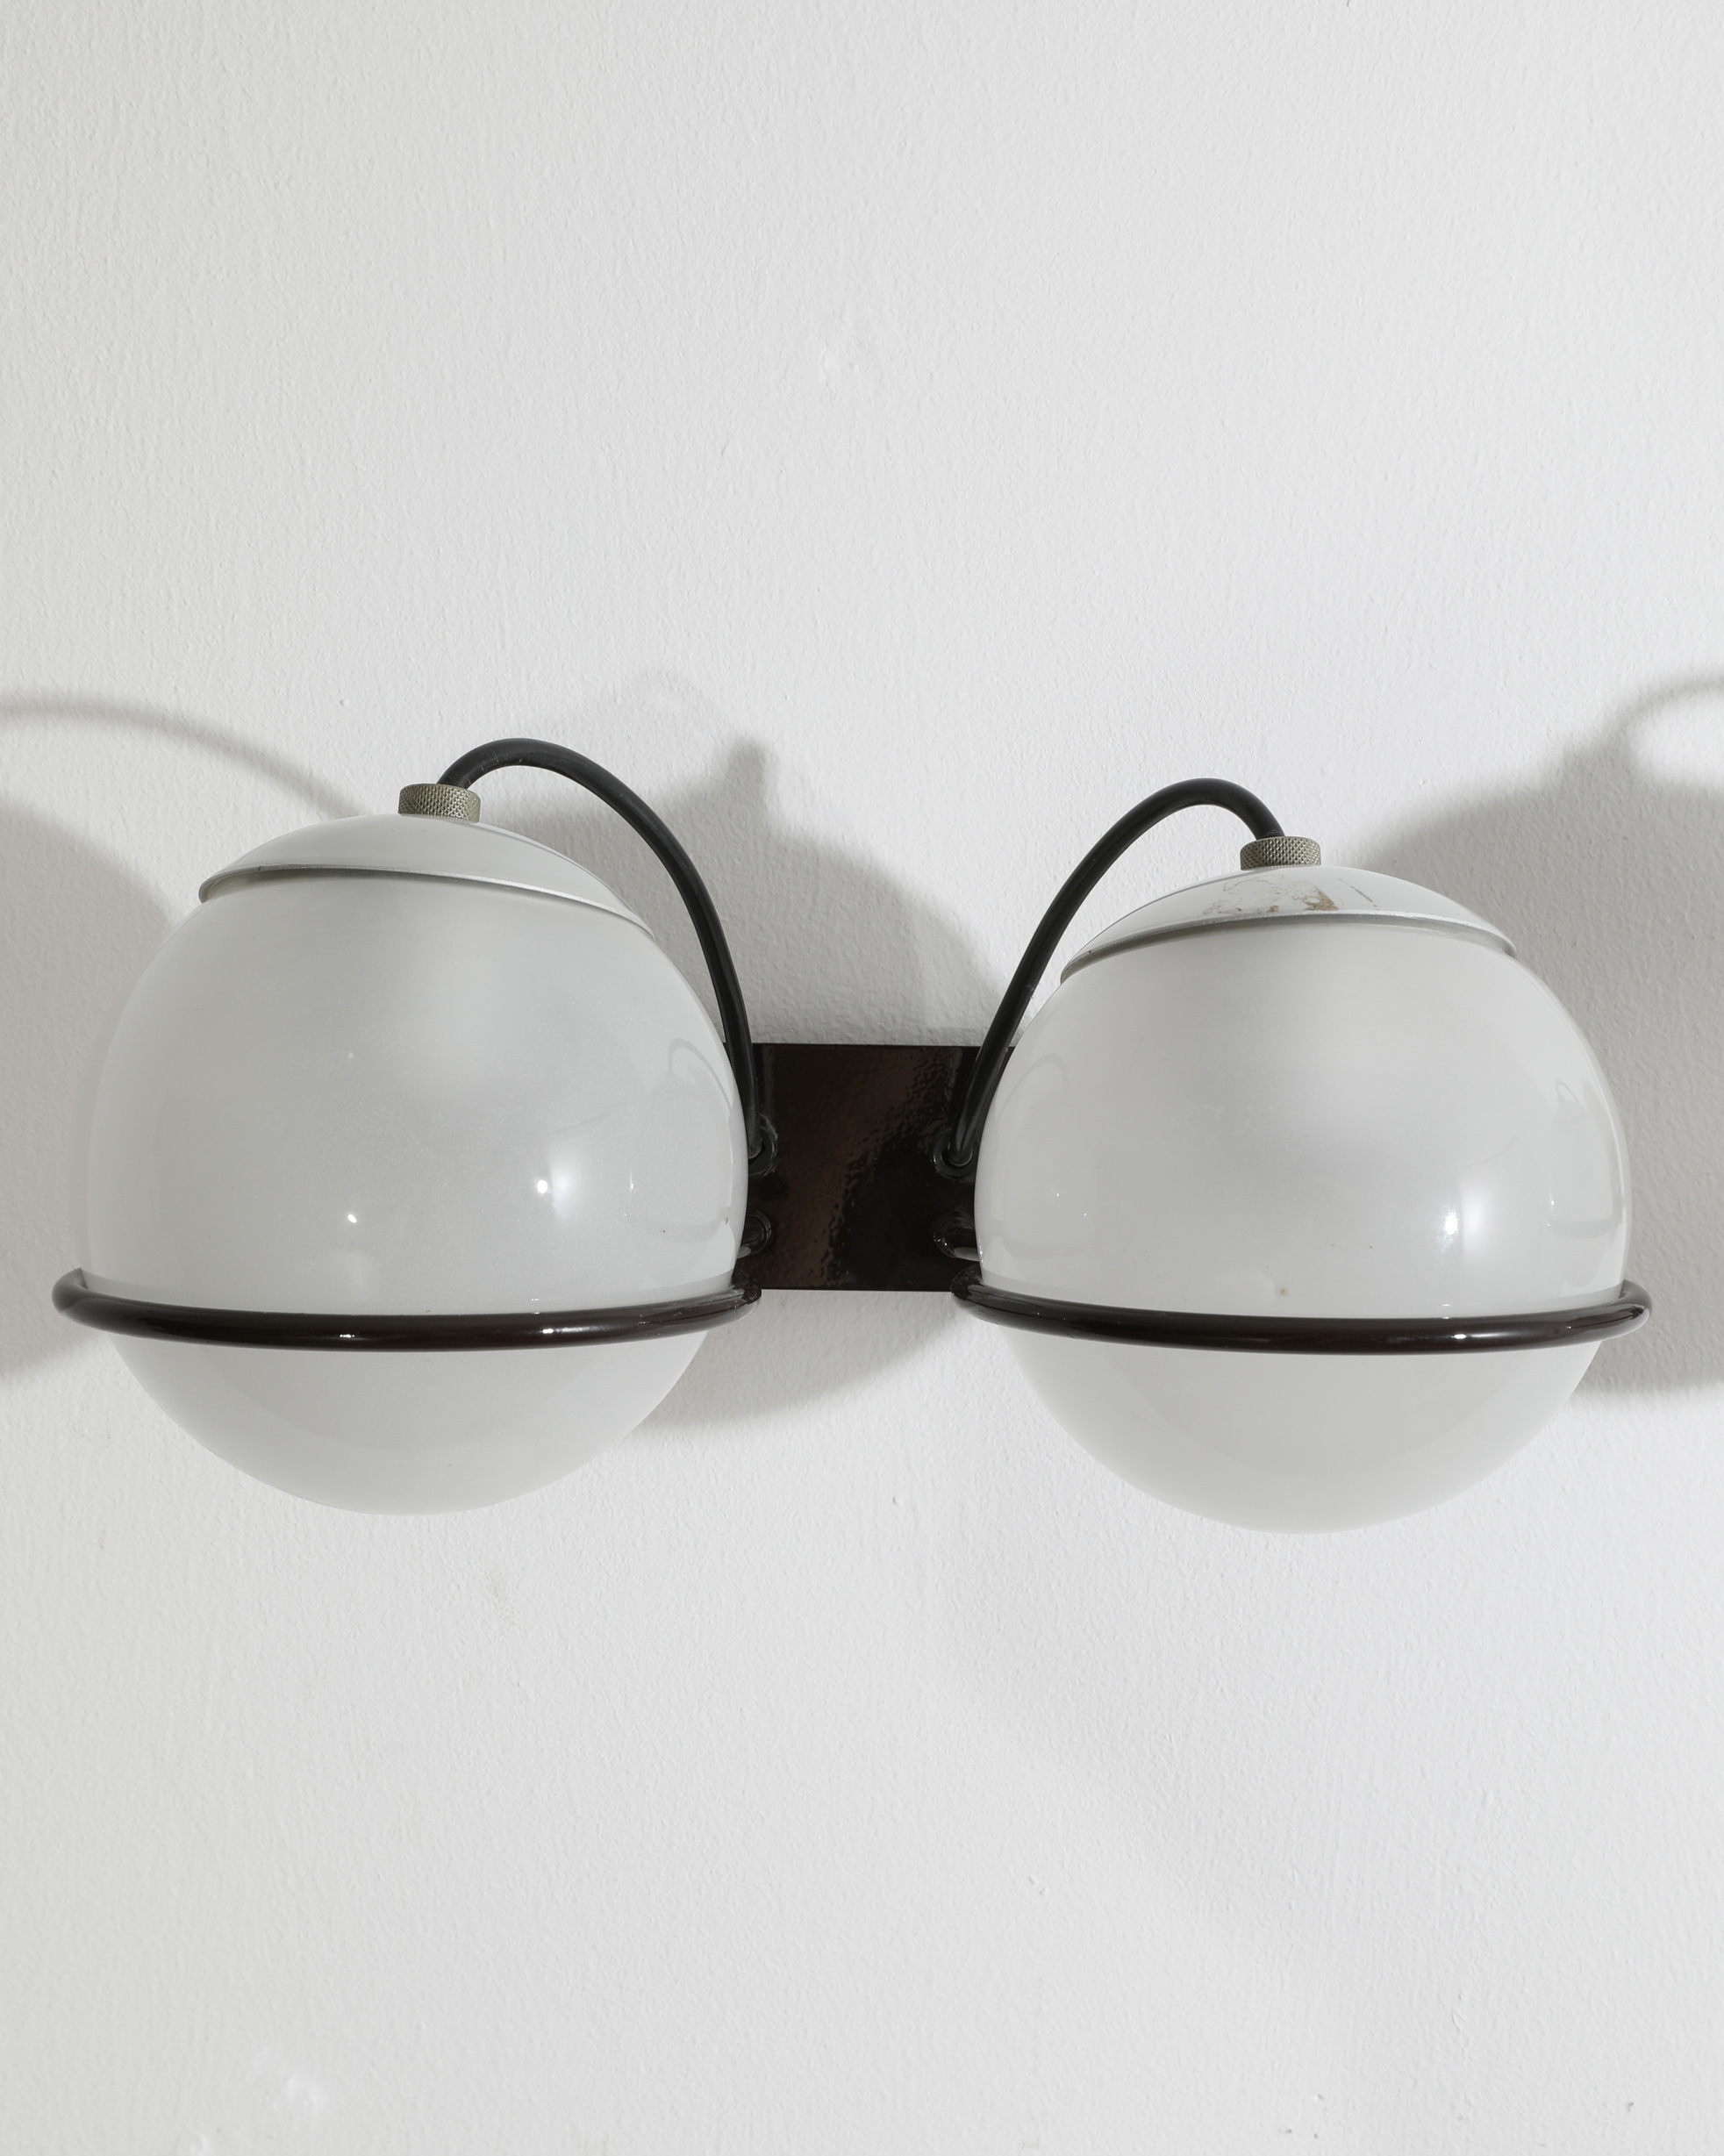 Gino Sarfatti, Arteluce, 2 Wall Lamps Model 237/2 - Image 4 of 4